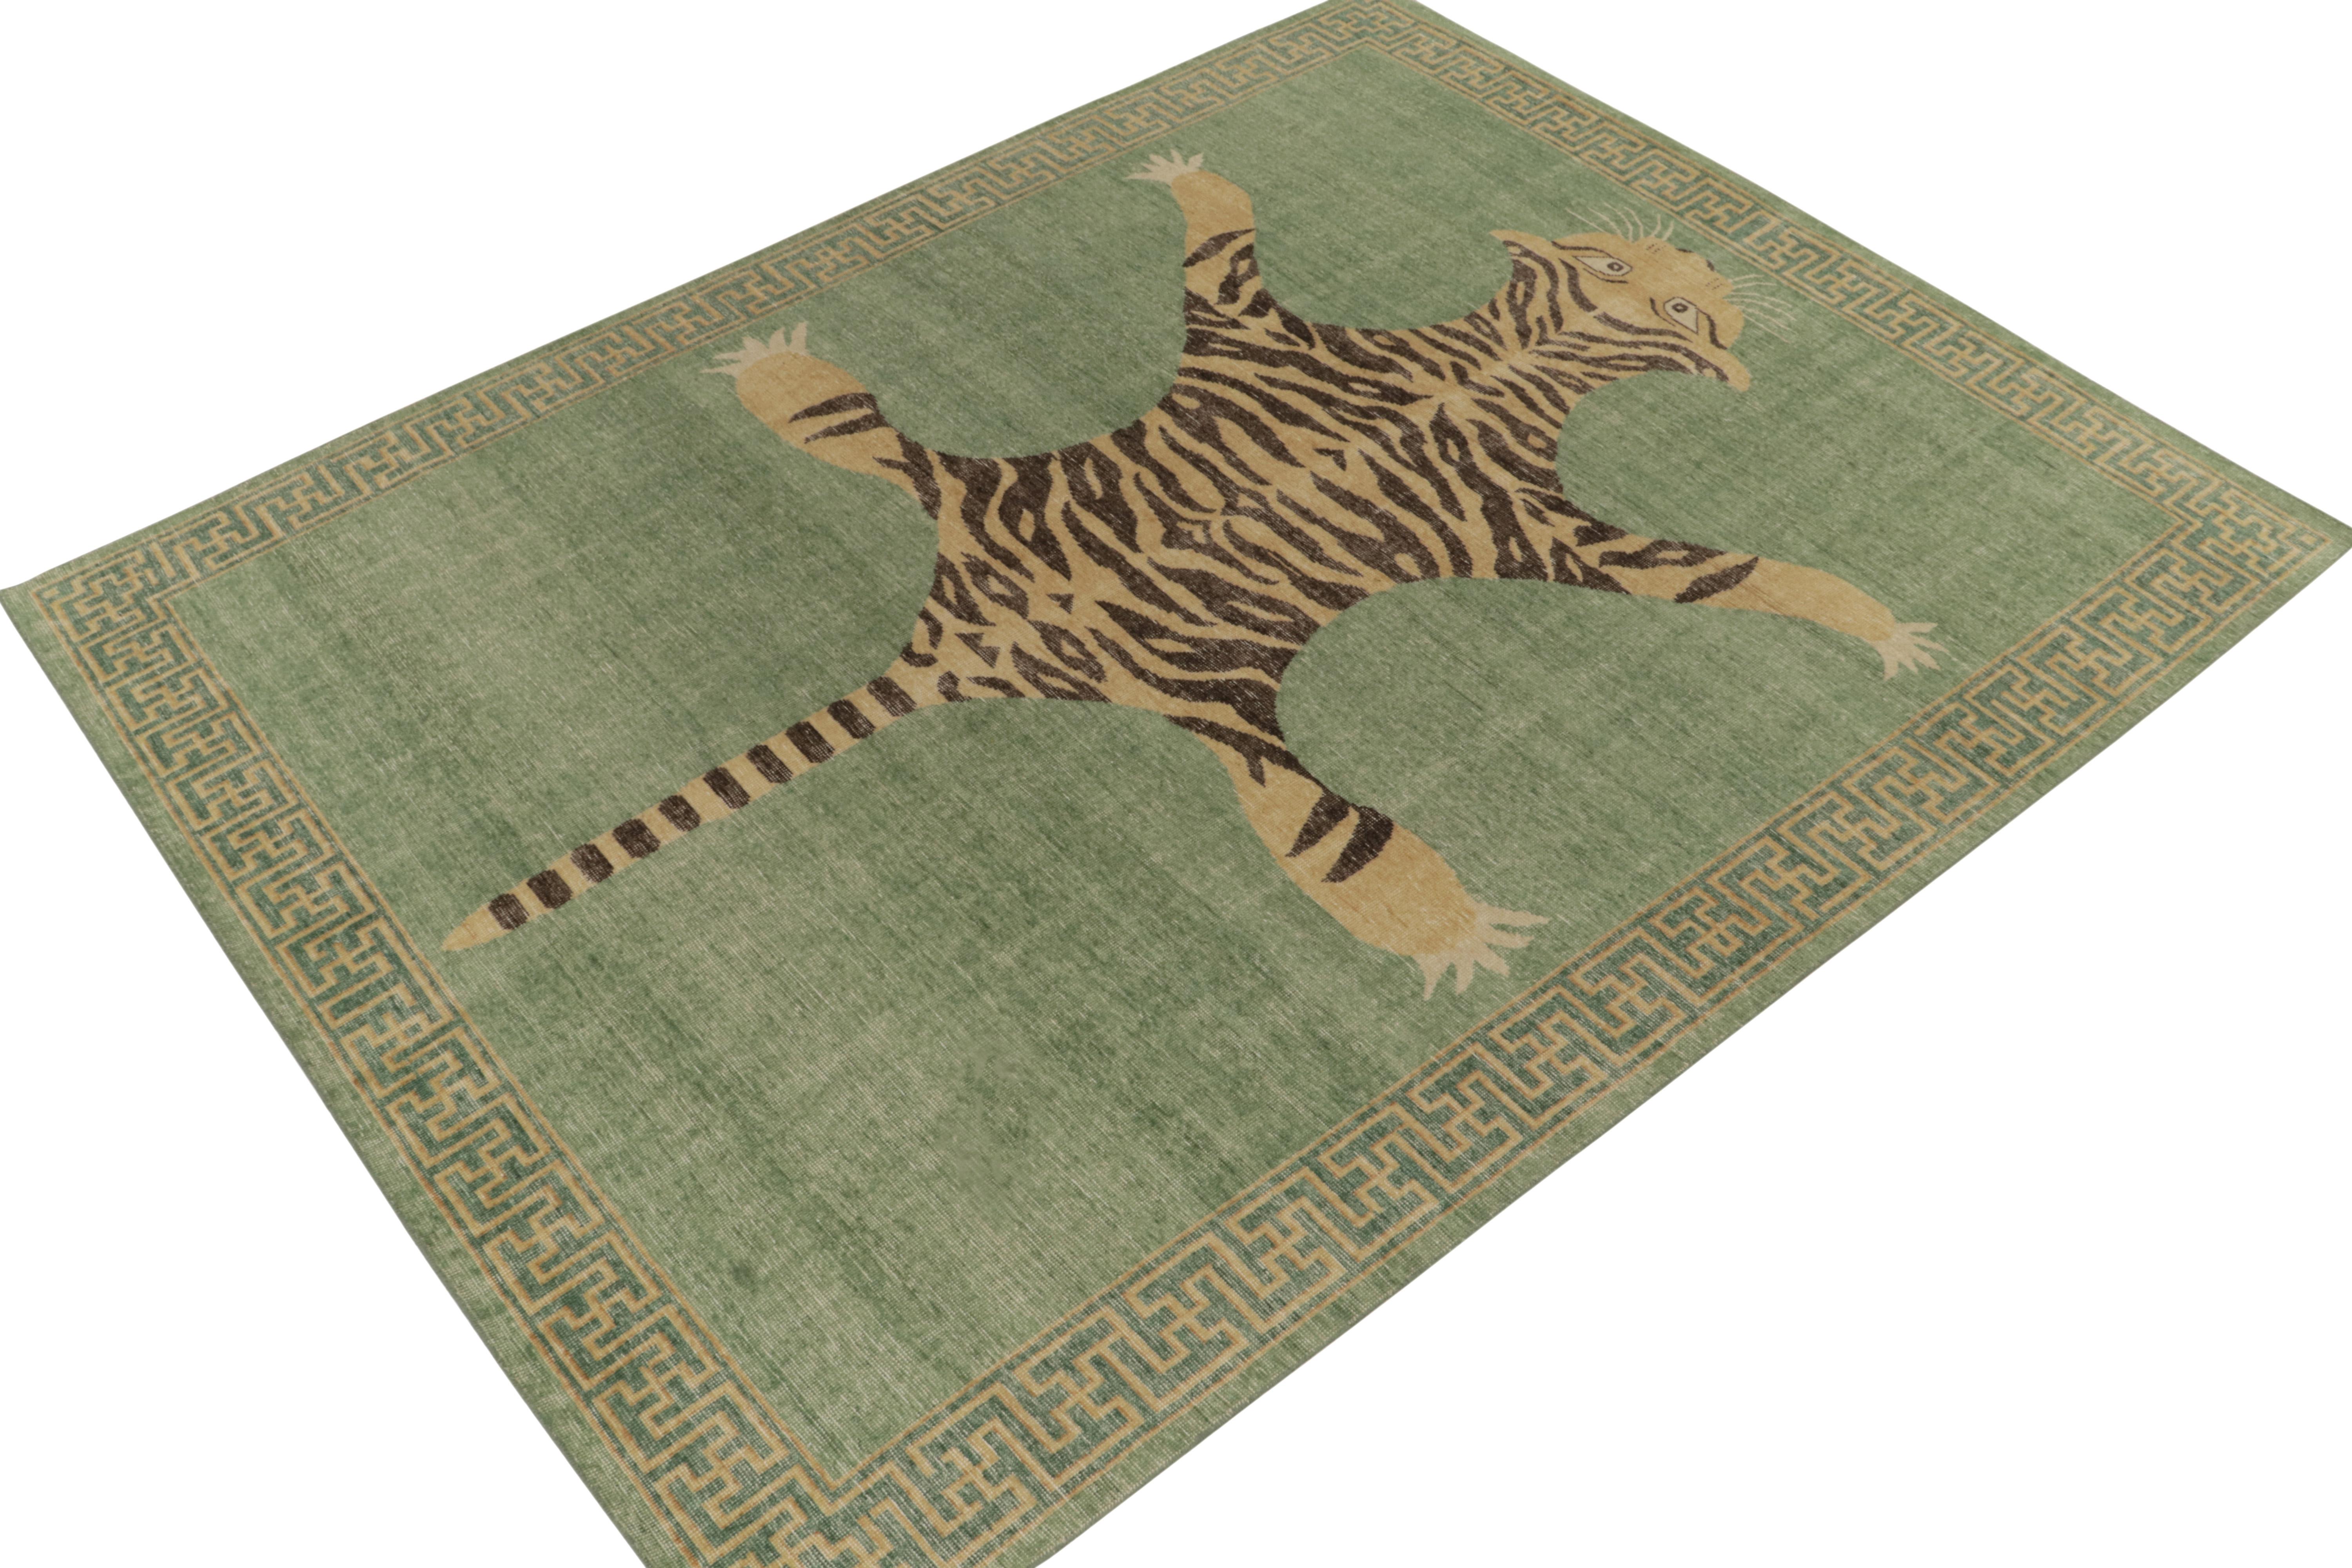 De la collection Homage de Rug & Kilim, une pièce en laine nouée à la main de 9x12 qui reprend le tapis en peau de tigre dans toute sa gloire. 

Sur le design : Cette pièce s'inspire d'anciens tapis indiens en peau de tigre à la présence royale et